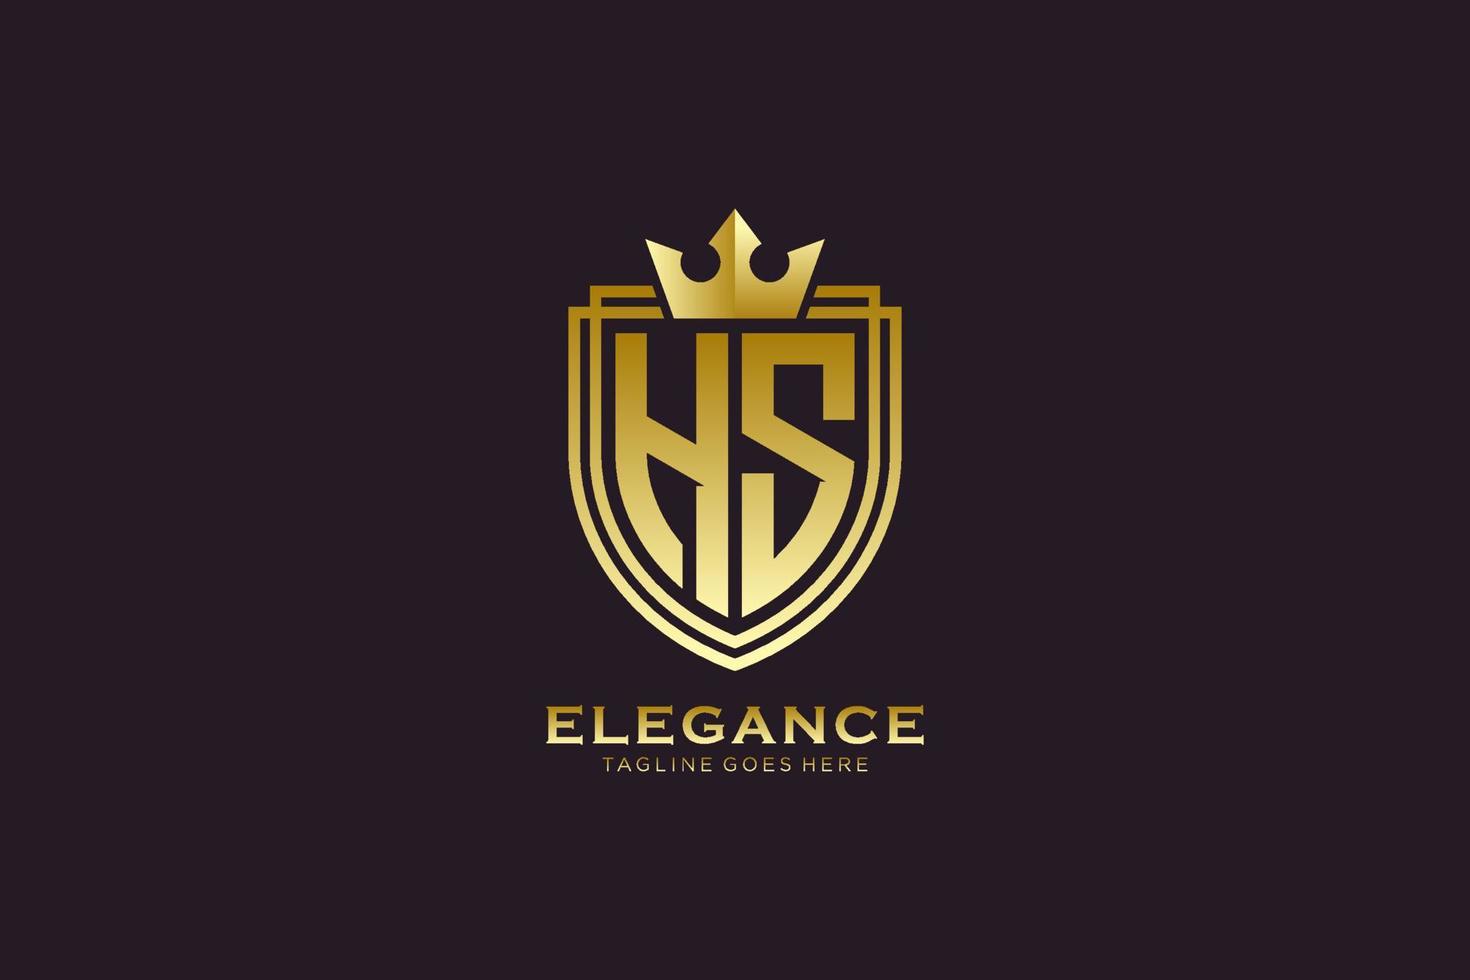 logo monogramme de luxe élégant initial hs ou modèle de badge avec volutes et couronne royale - parfait pour les projets de marque de luxe vecteur